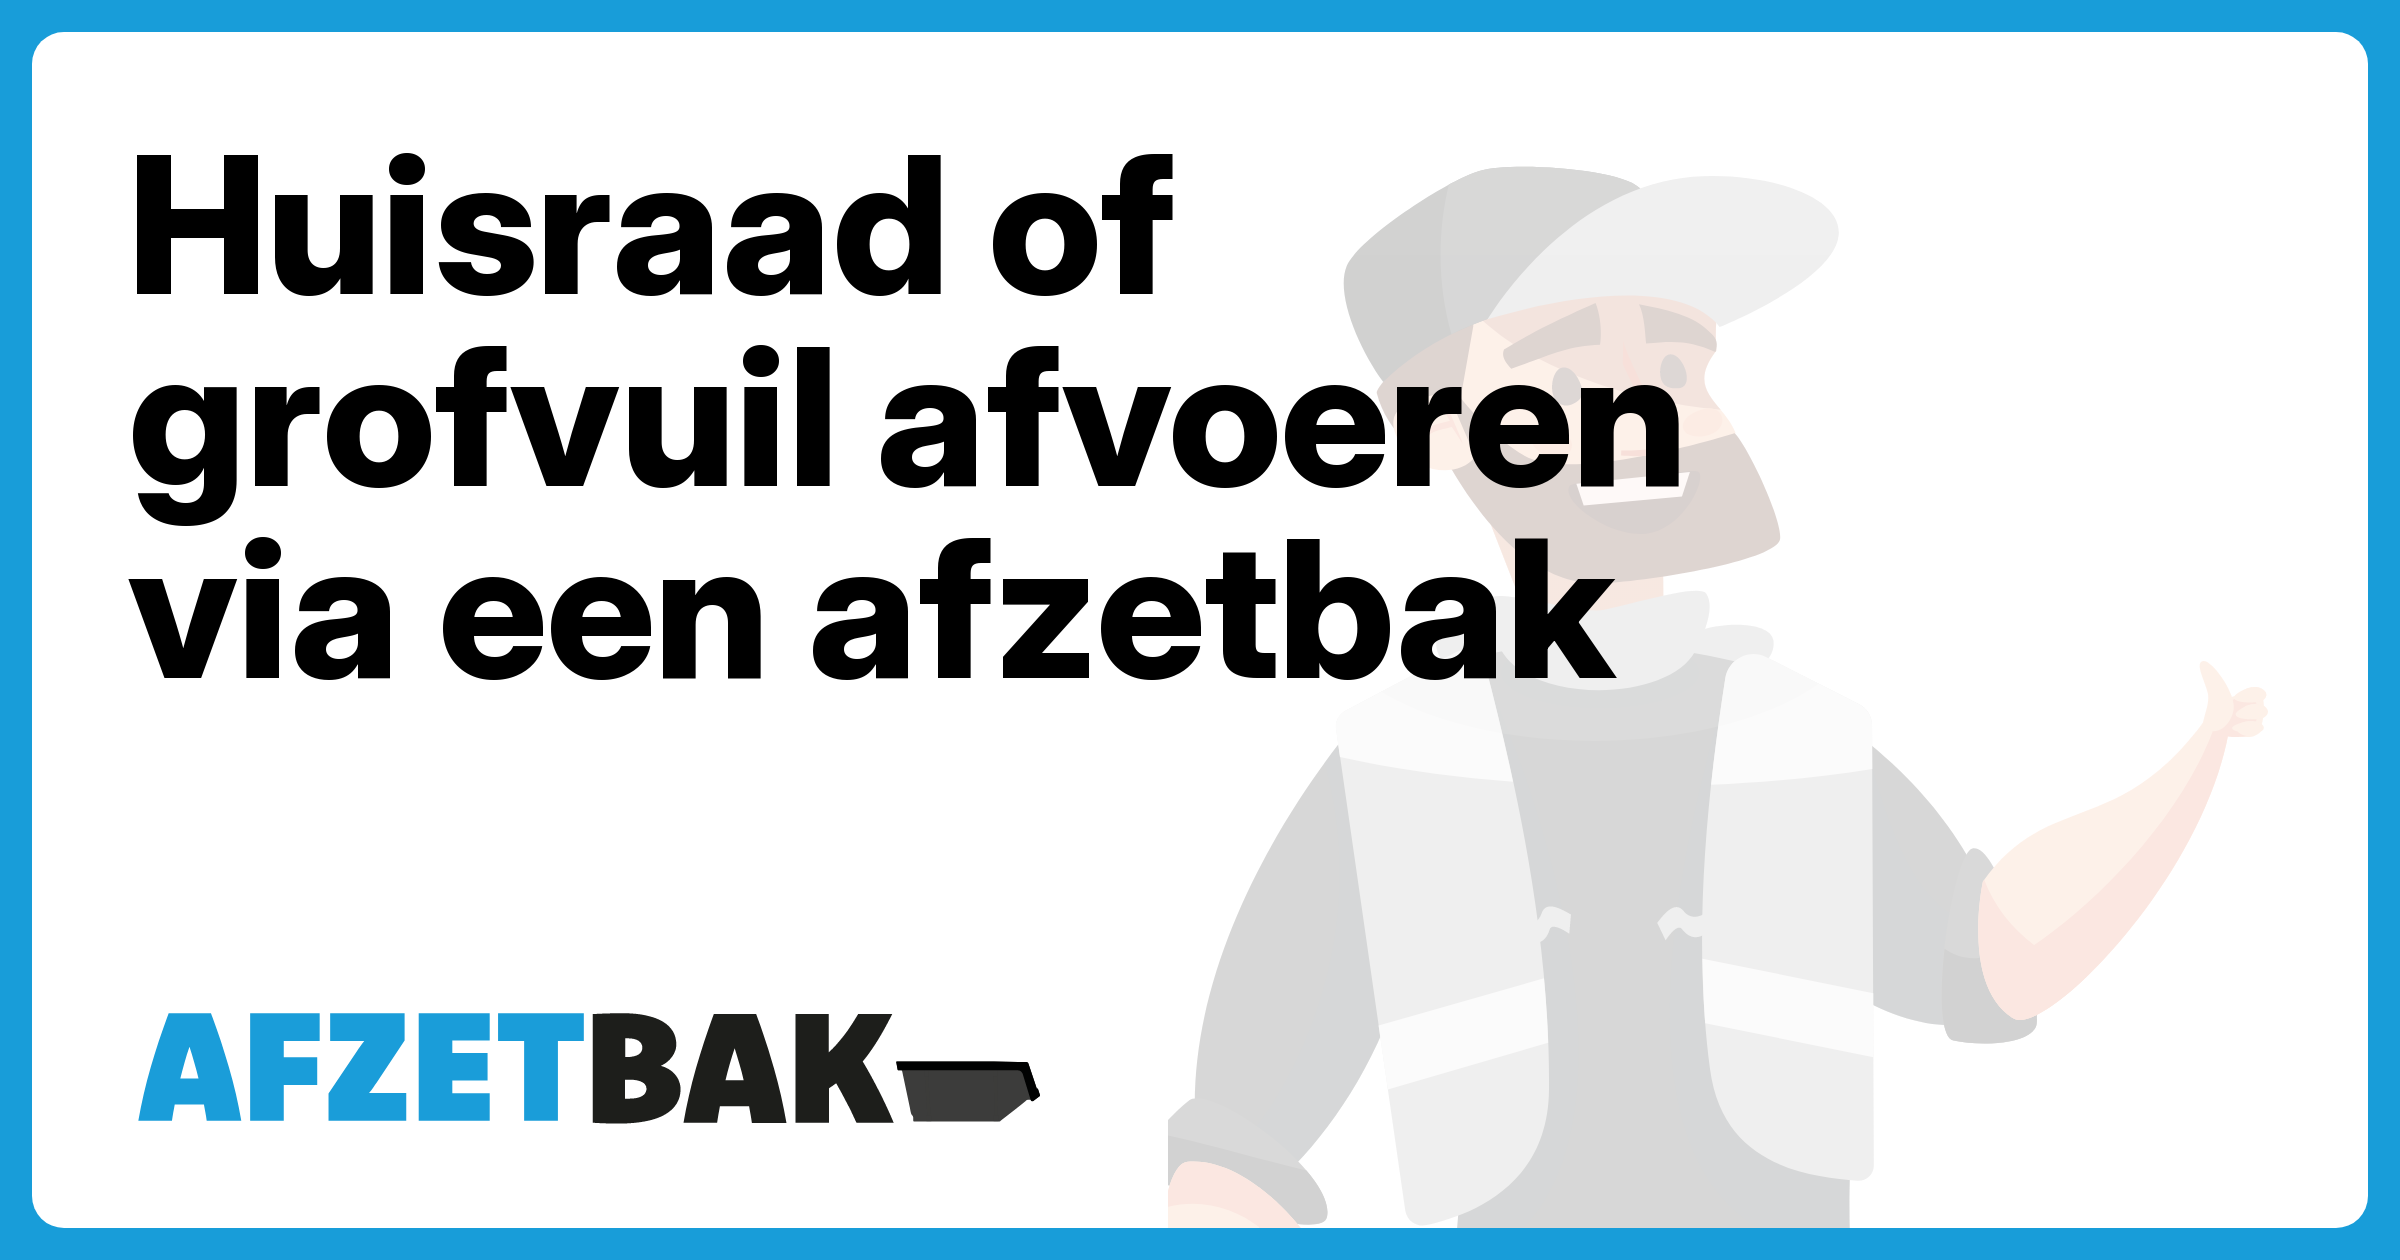 Huisraad of grofvuil afvoeren via een afzetbak - Afzetbak.nl